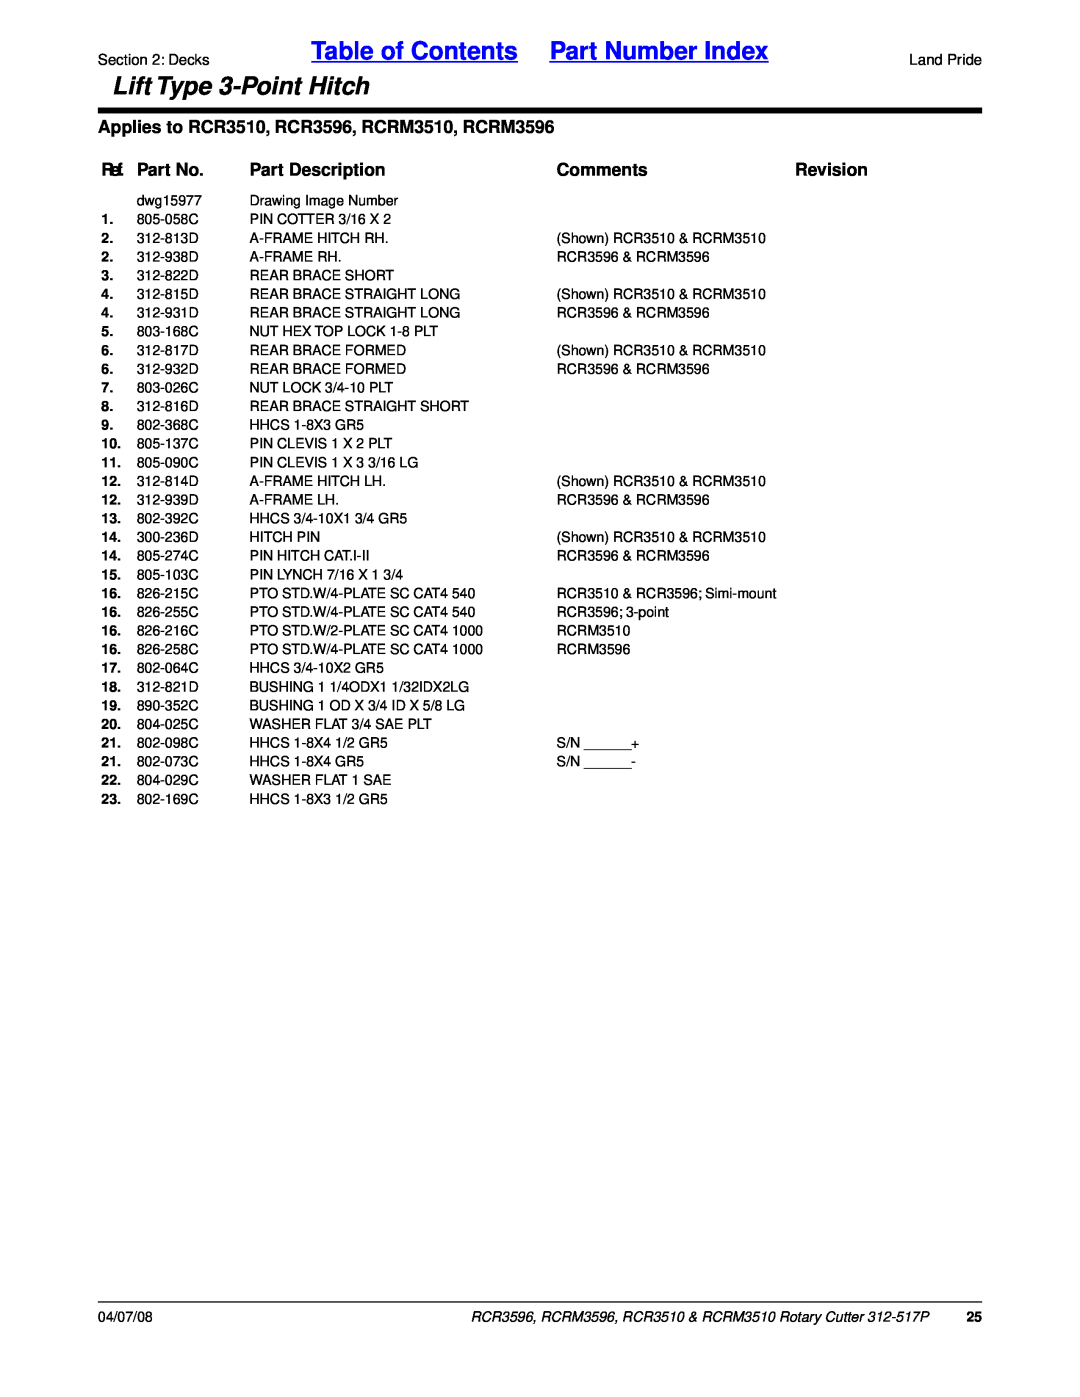 Land Pride RCRM3510 Table of Contents Part Number Index, Lift Type 3-PointHitch, Ref. Part No, Part Description, Comments 